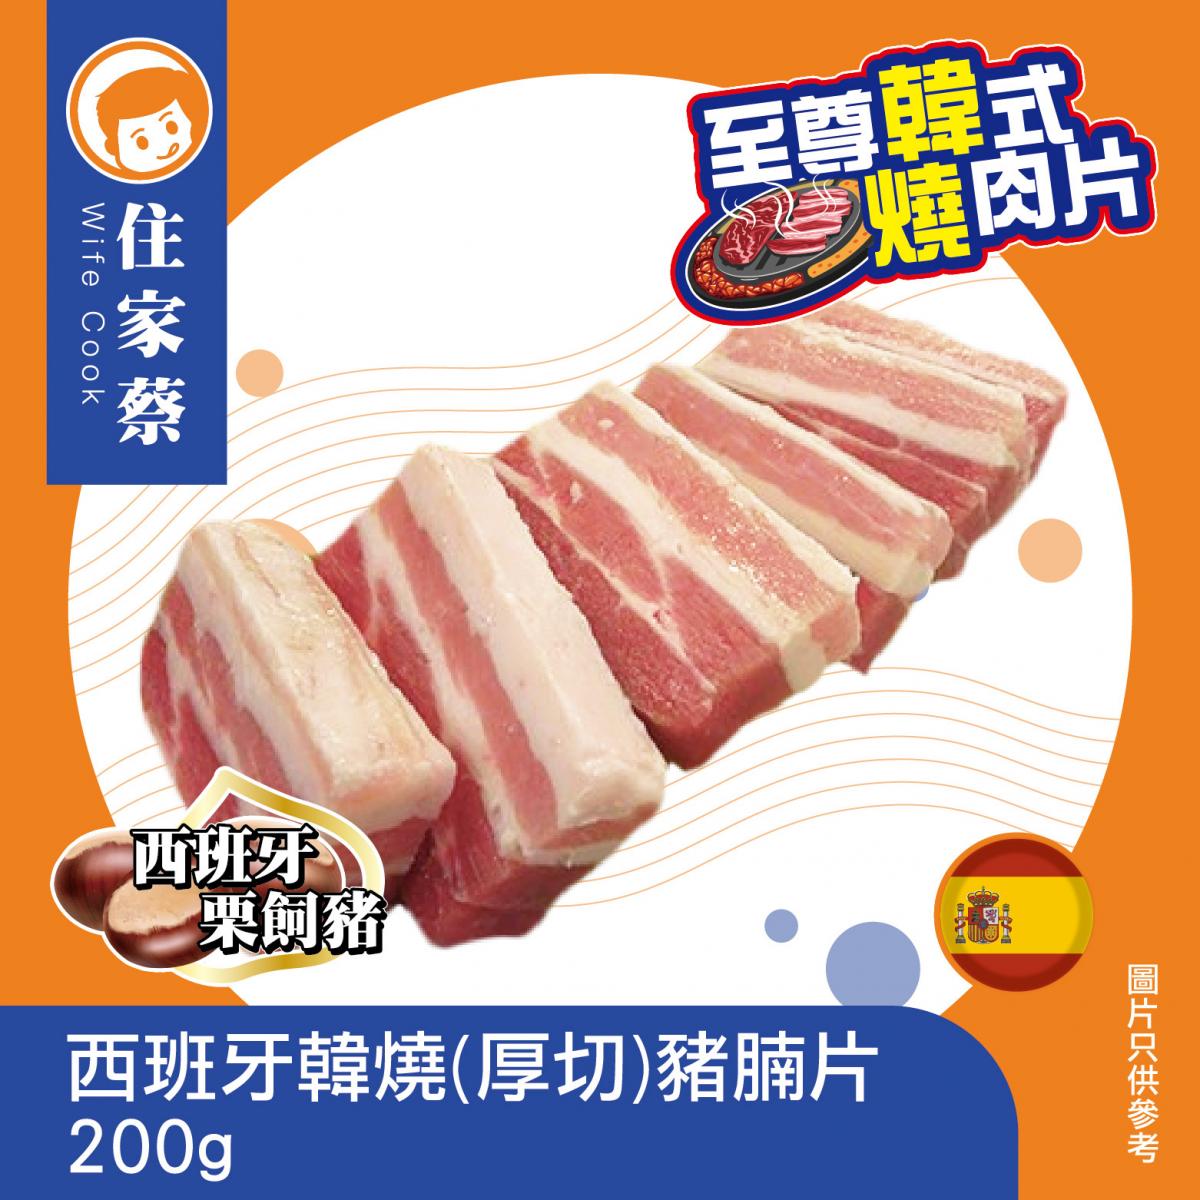 Spain Pork Belly Sliced 200g (forzen-18°C) 西班牙韓燒(厚切)豚(豬)腩片